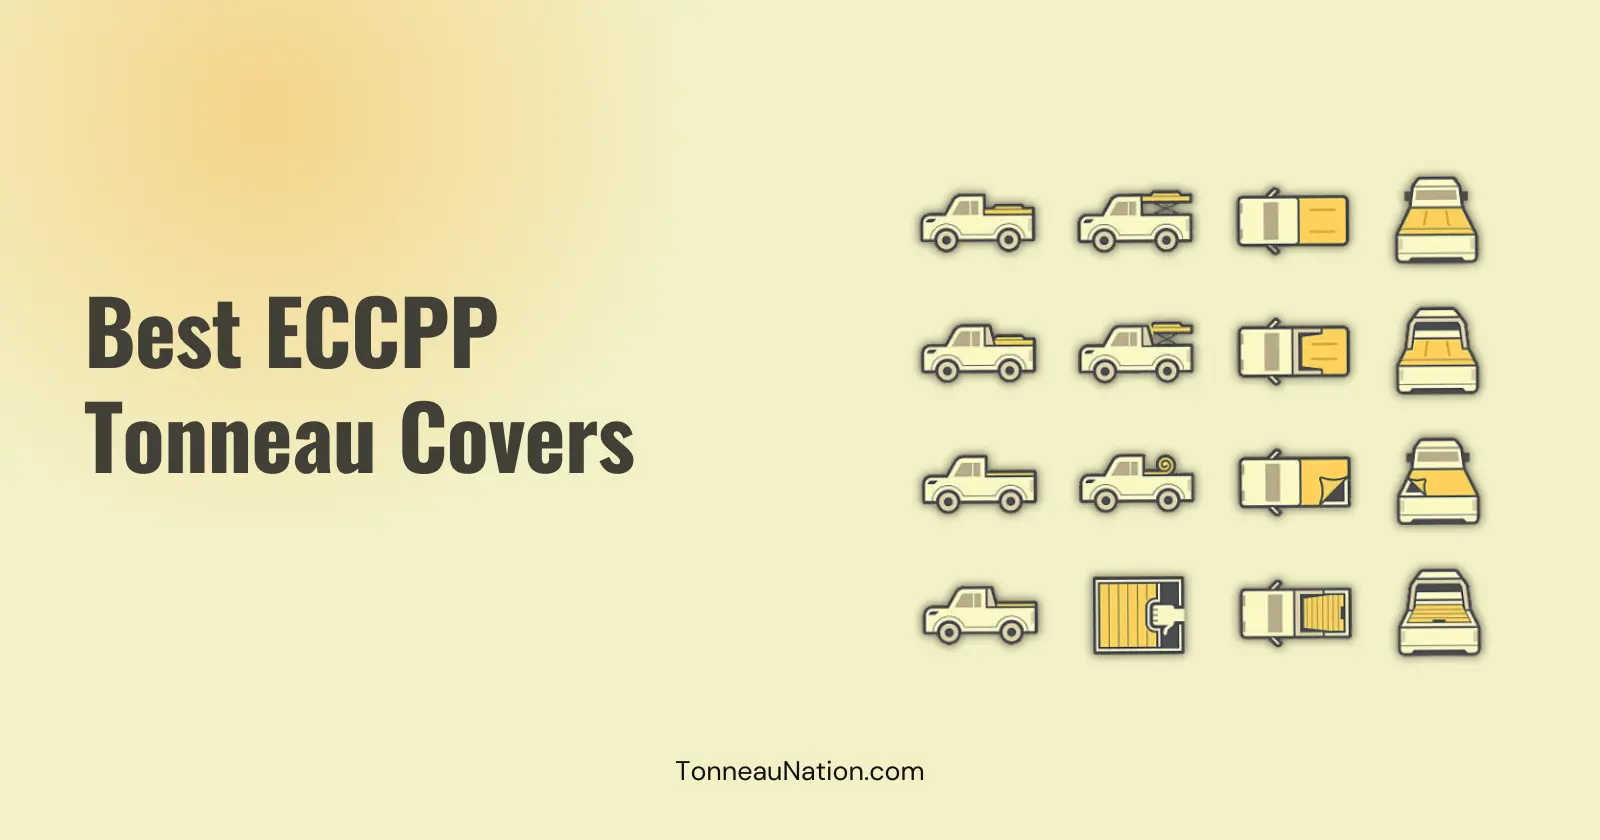 Tonneau cover from ECCPP brand